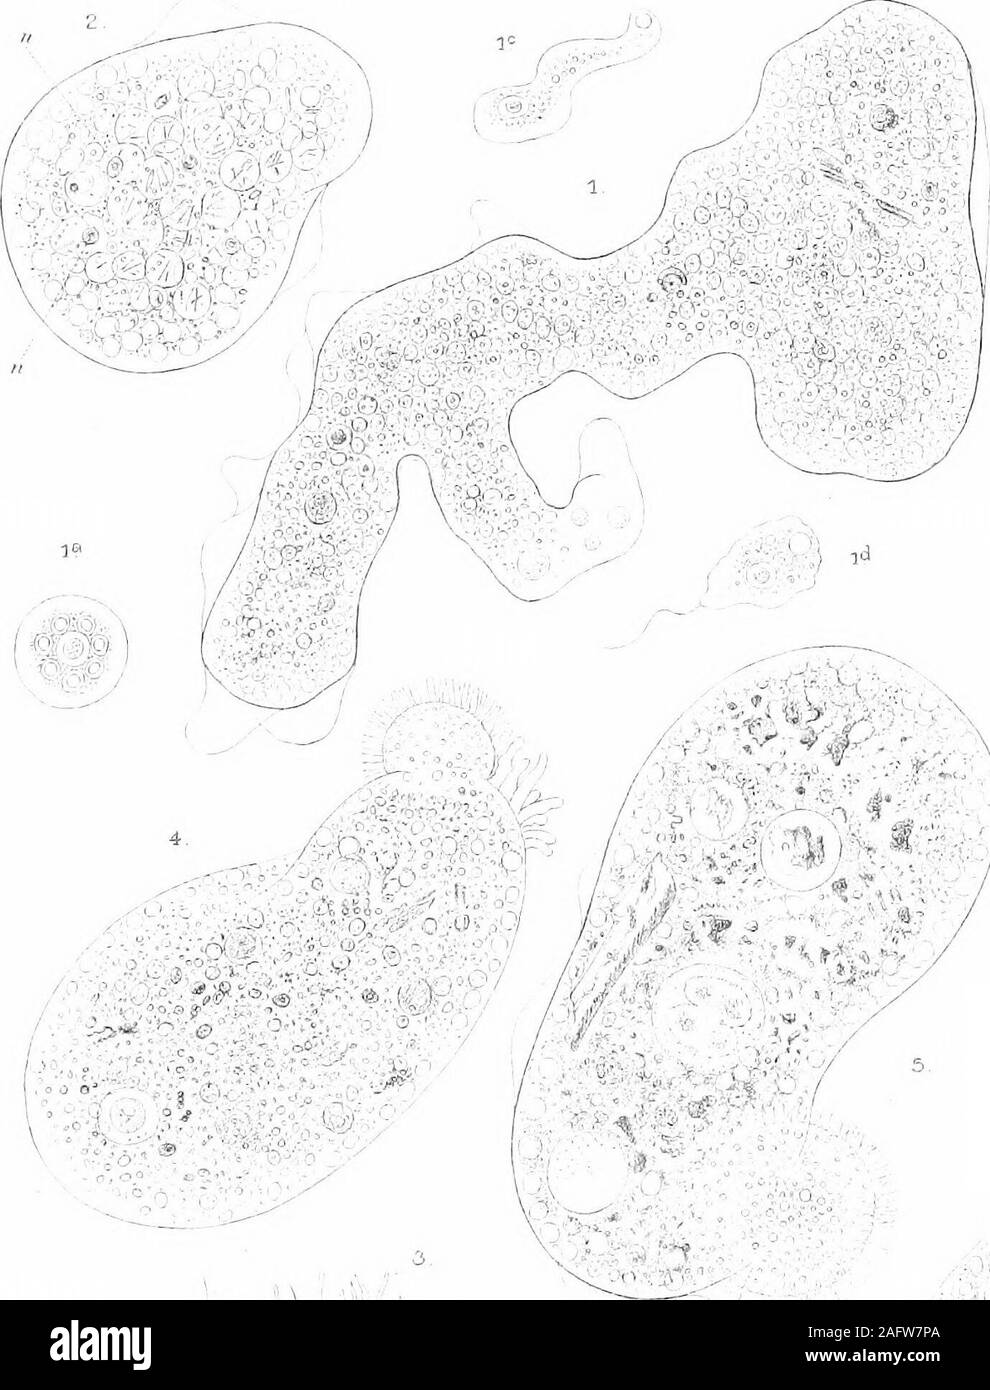 . Il Britannico Rhizopoda acqua dolce e Heliozoa. Piastra piastra 7 VII. Fios. 1-3. Pelomyxa pahtstris G-reeff. (P. 74) Fig. 1.-Ordinarycondition durante il movimento attivo. Stagno a JSTorthenEtchells, Cheshire, x circa 100. Figg. 1a-d.-fasi di sviluppo da amoebulaSj come observedby G-reeff. Fig. 2.-un individuo giovane in restingstate, che mostra la struttura interna; dopo G-reeff. xabout 60-70. Fig. 3.-un insolito fase di restingstate, il plasma-corpo formante un sub-massa sferica?con una frangia di sottili pseudopodi ialina. x circa150. 4-6. P. villosa Leidy. (P. 79) Fig. 4.-conditionduring ordinaria acti Foto Stock